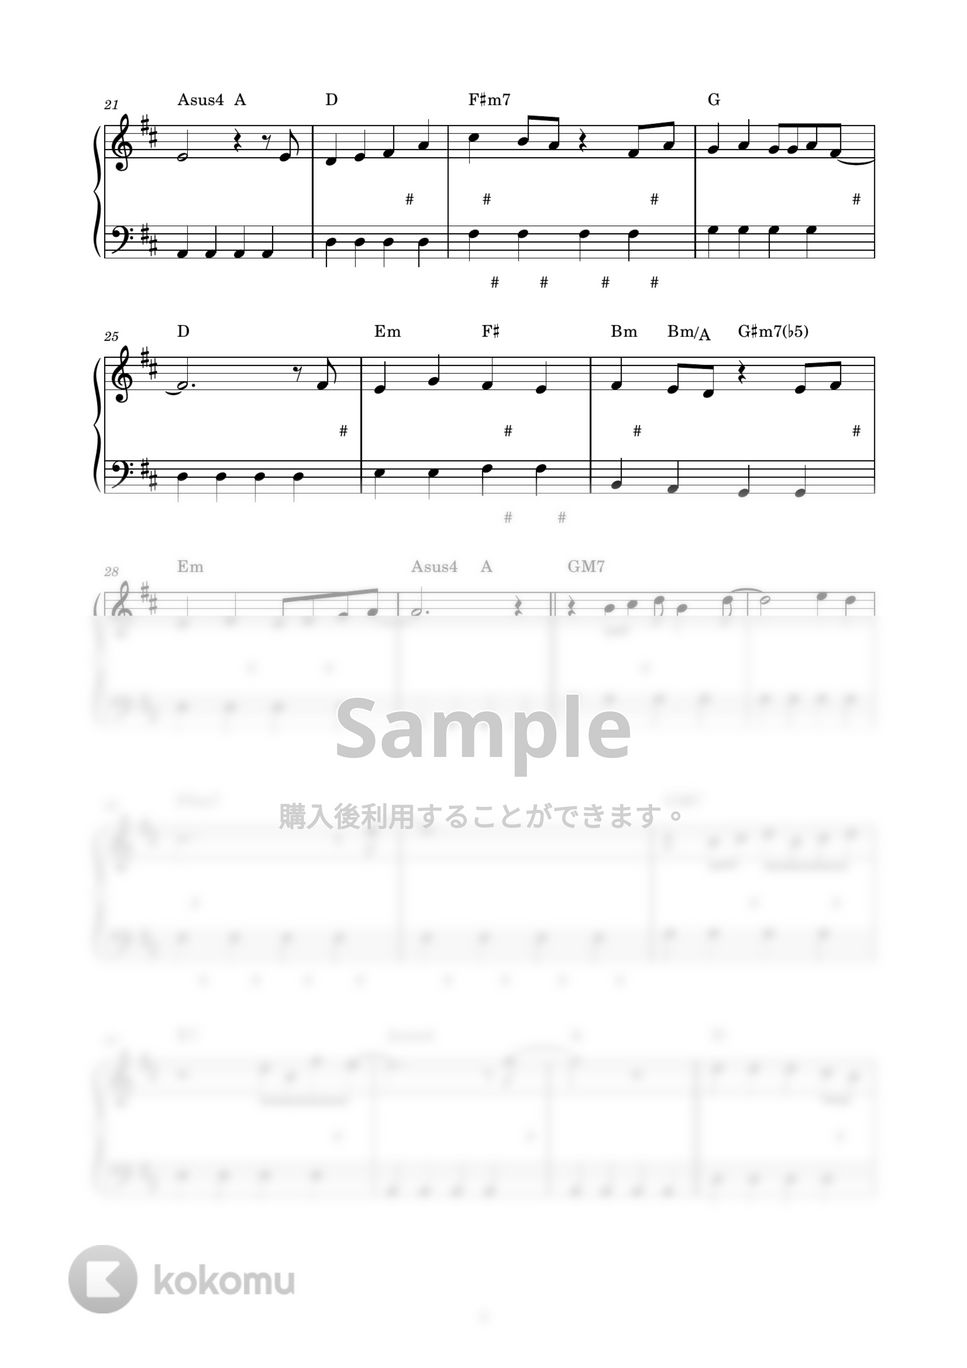 にじのむこうに (ピアノ楽譜 / かんたん両手 / 歌詞付き / ドレミ付き / 初心者向き) by piano.tokyo